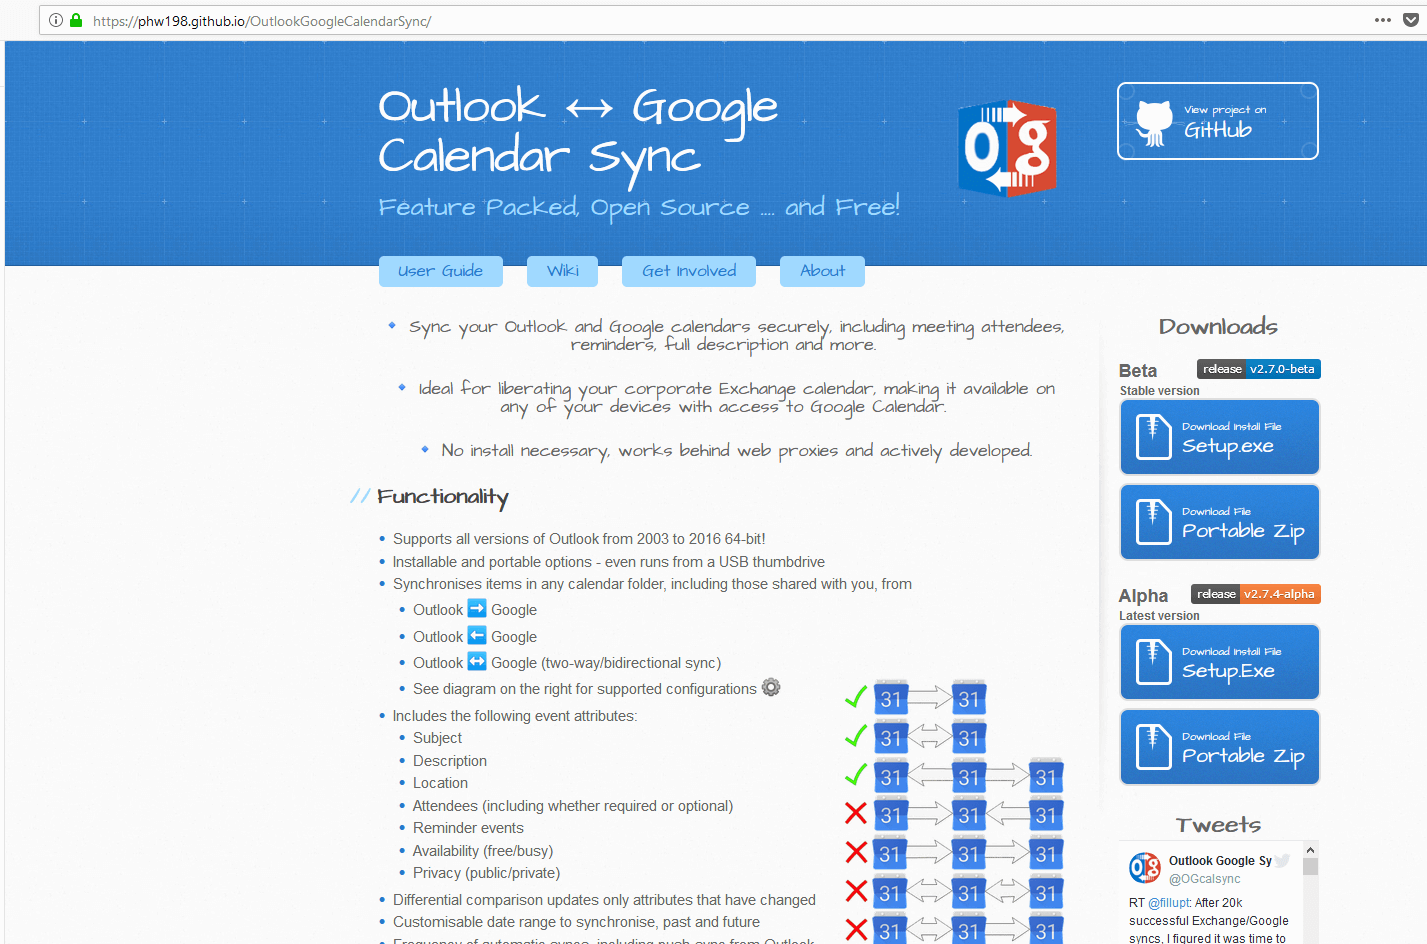 Sito del tool per la sincronizzazione Outlook Google Calendar Sync